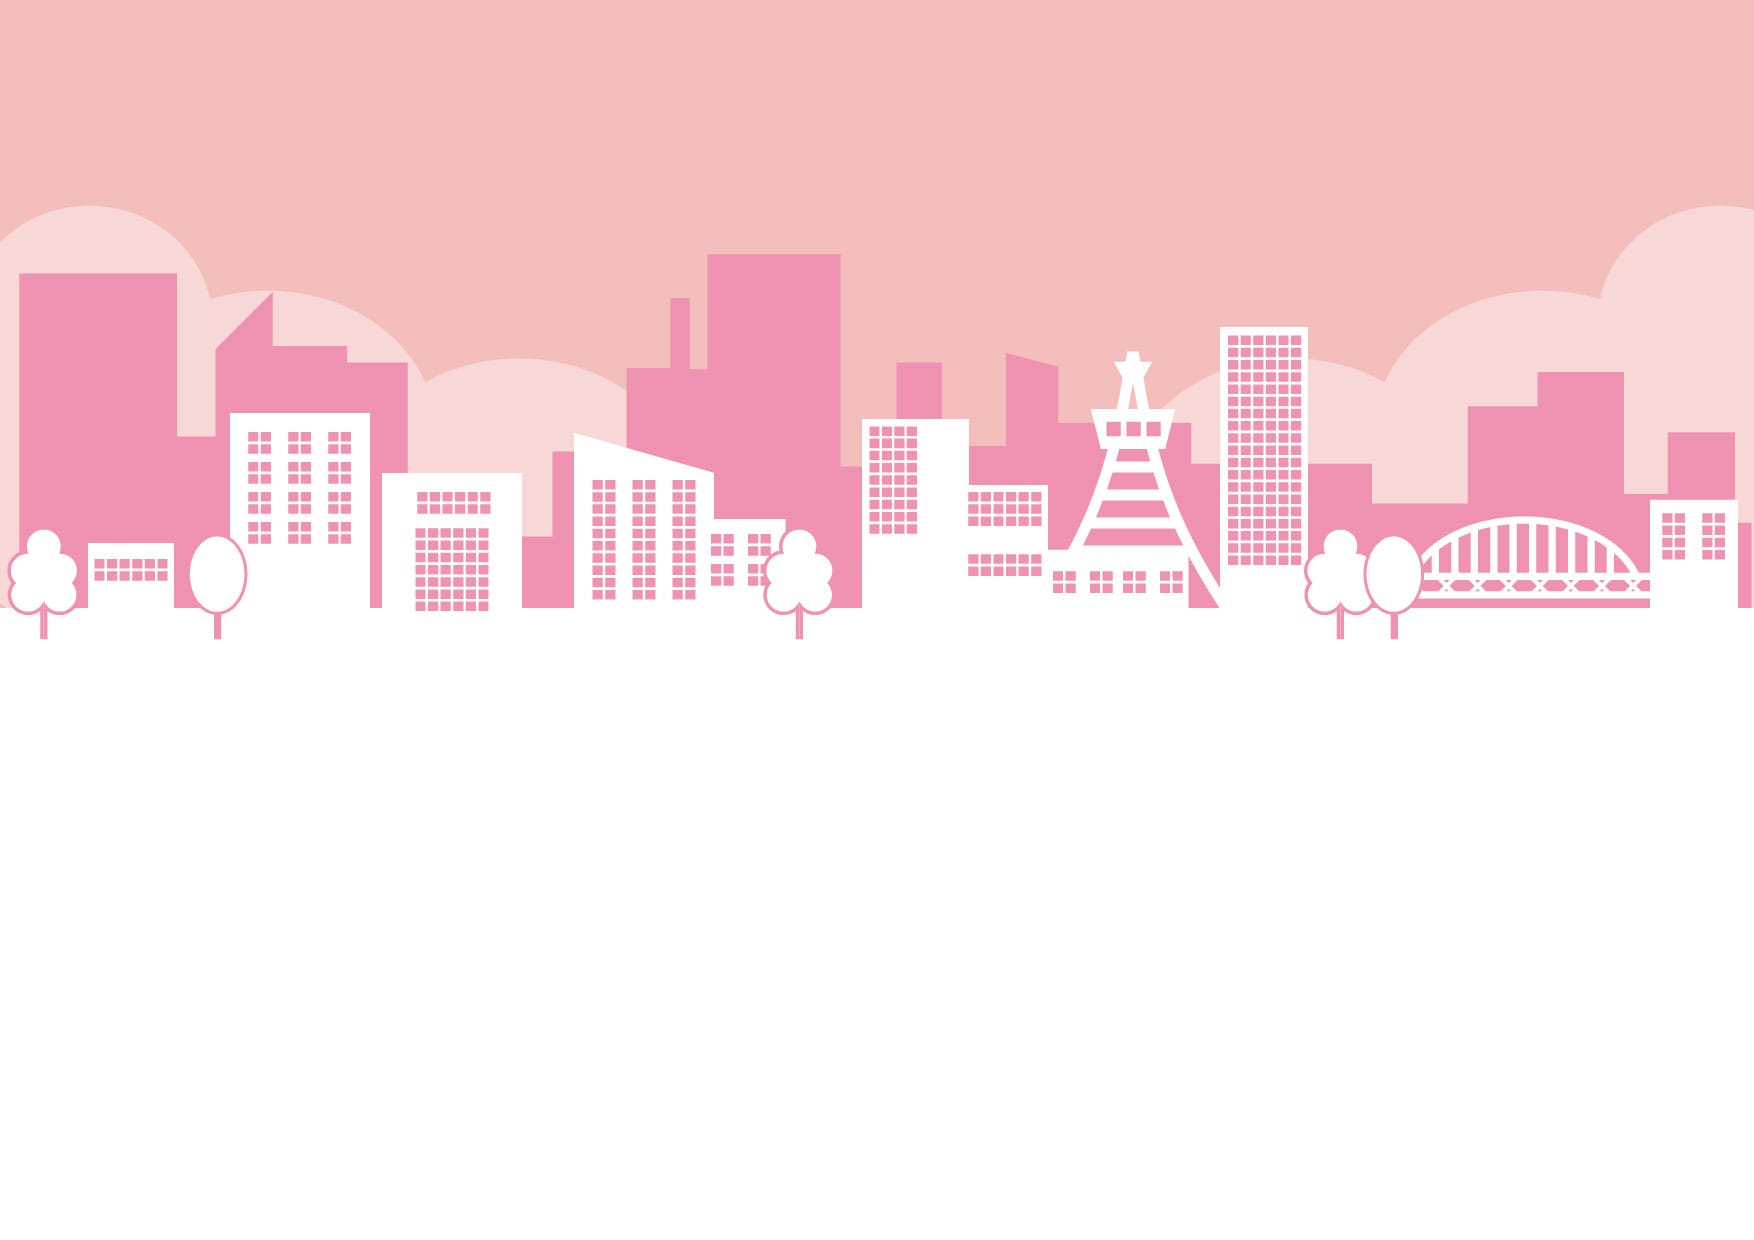 可愛いイラスト無料 街並み ピンク色 Free Illustration Cityscape Pink 公式 イラスト素材サイト イラストダウンロード